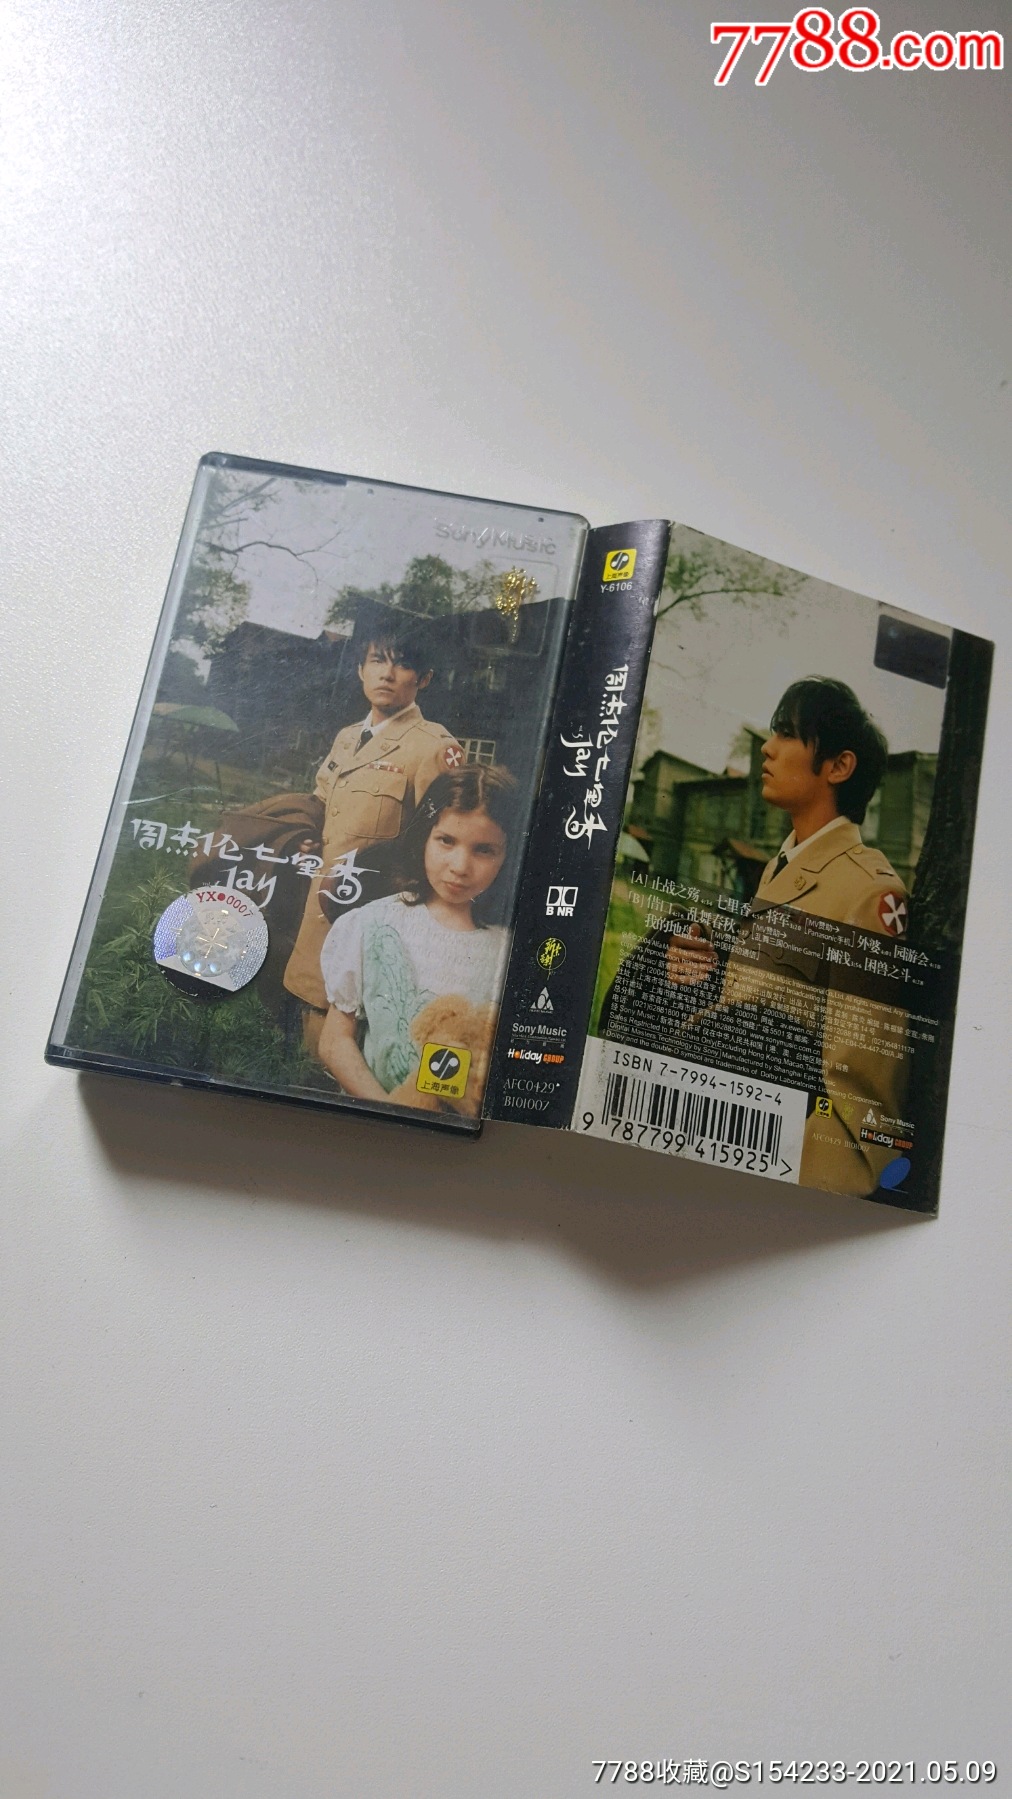 周杰伦七里香(音乐cd)